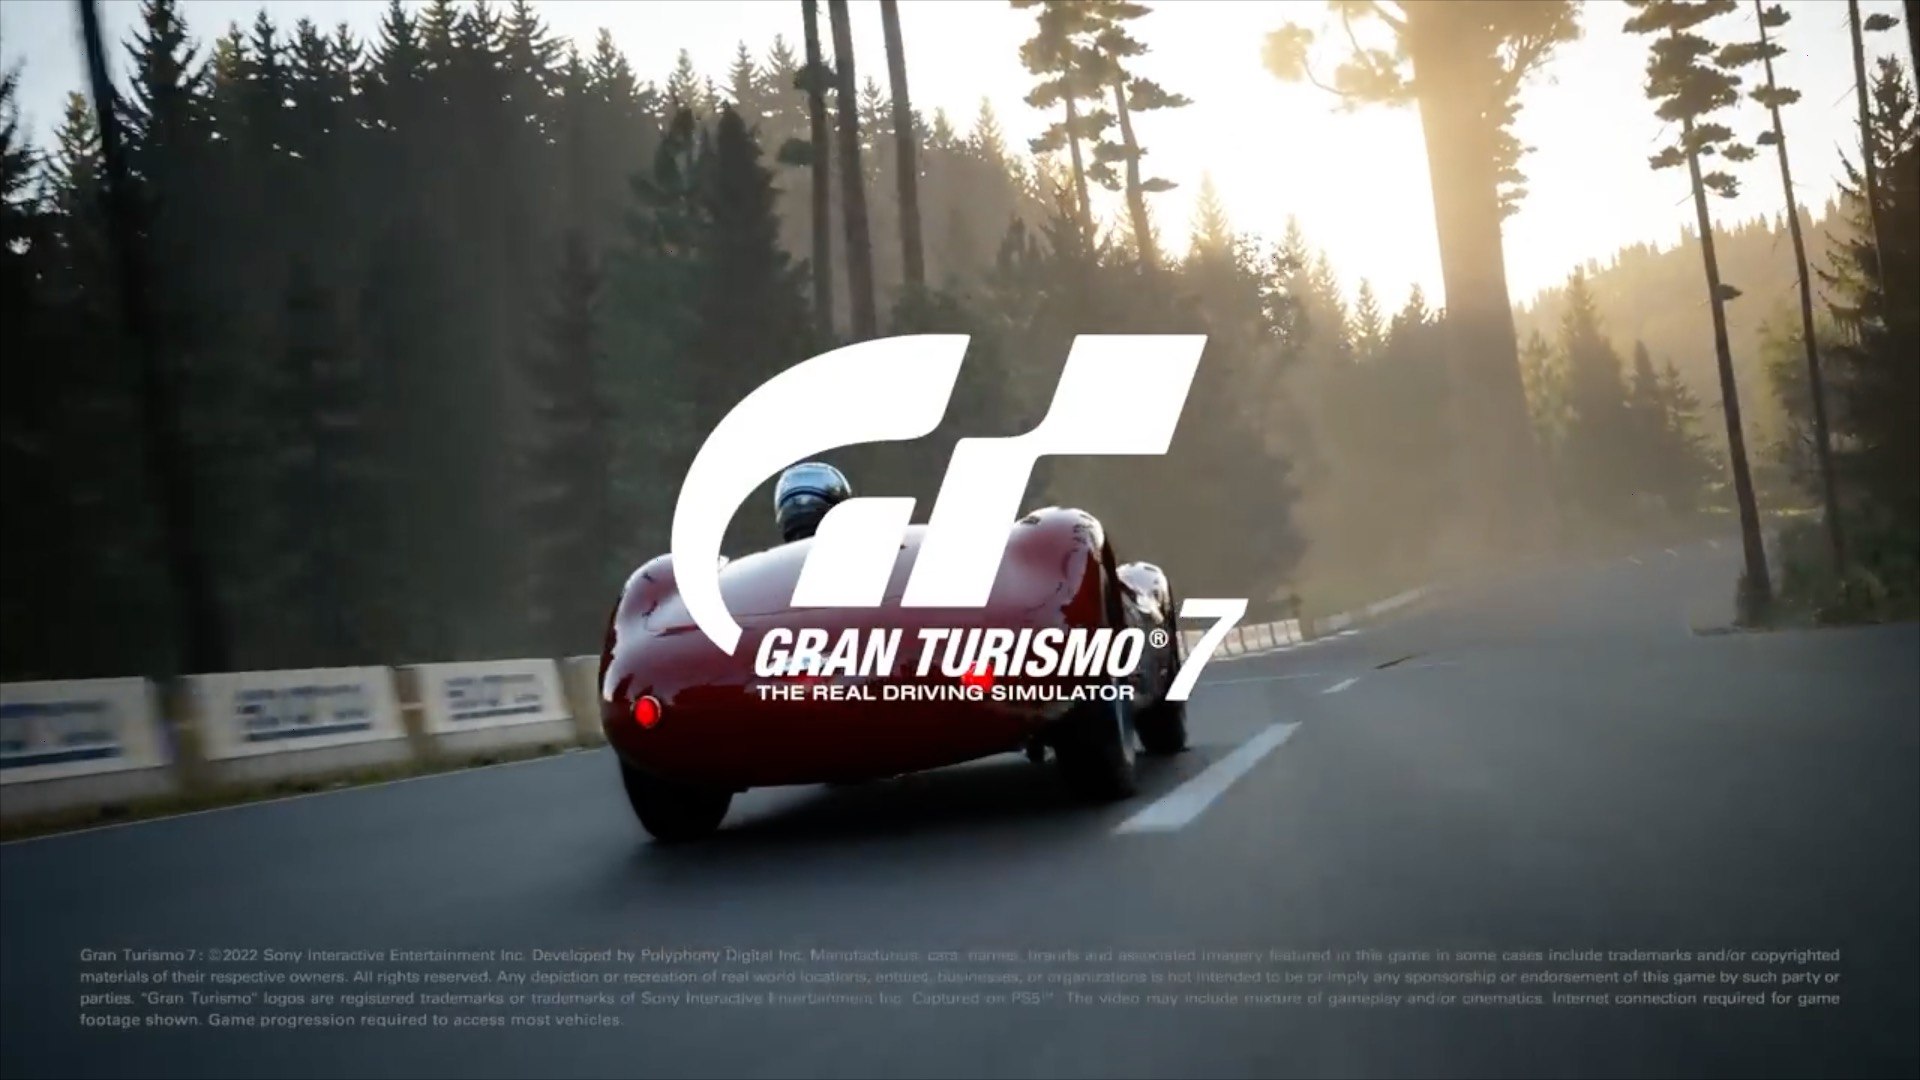 Gran Turismo 7 - Trailer da Atualização 1.19 de Julho